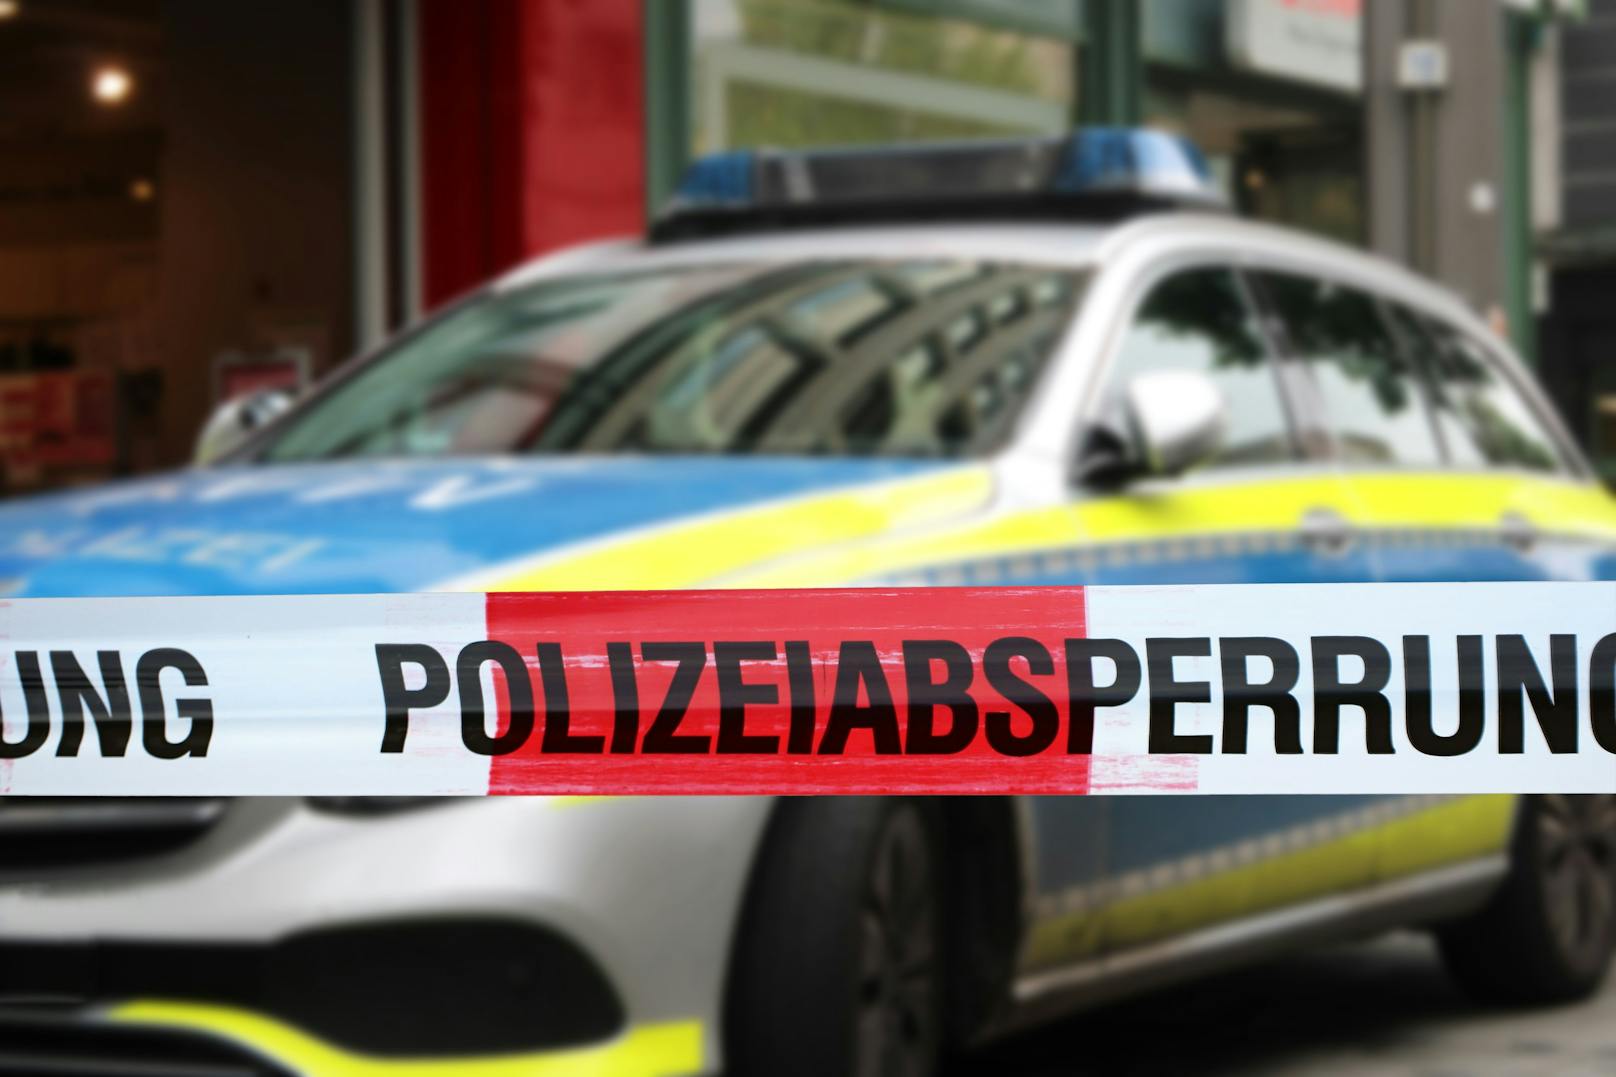 Polizisten aus Stuttgart verhinderten einen groß angelegten Bombenanschlag.